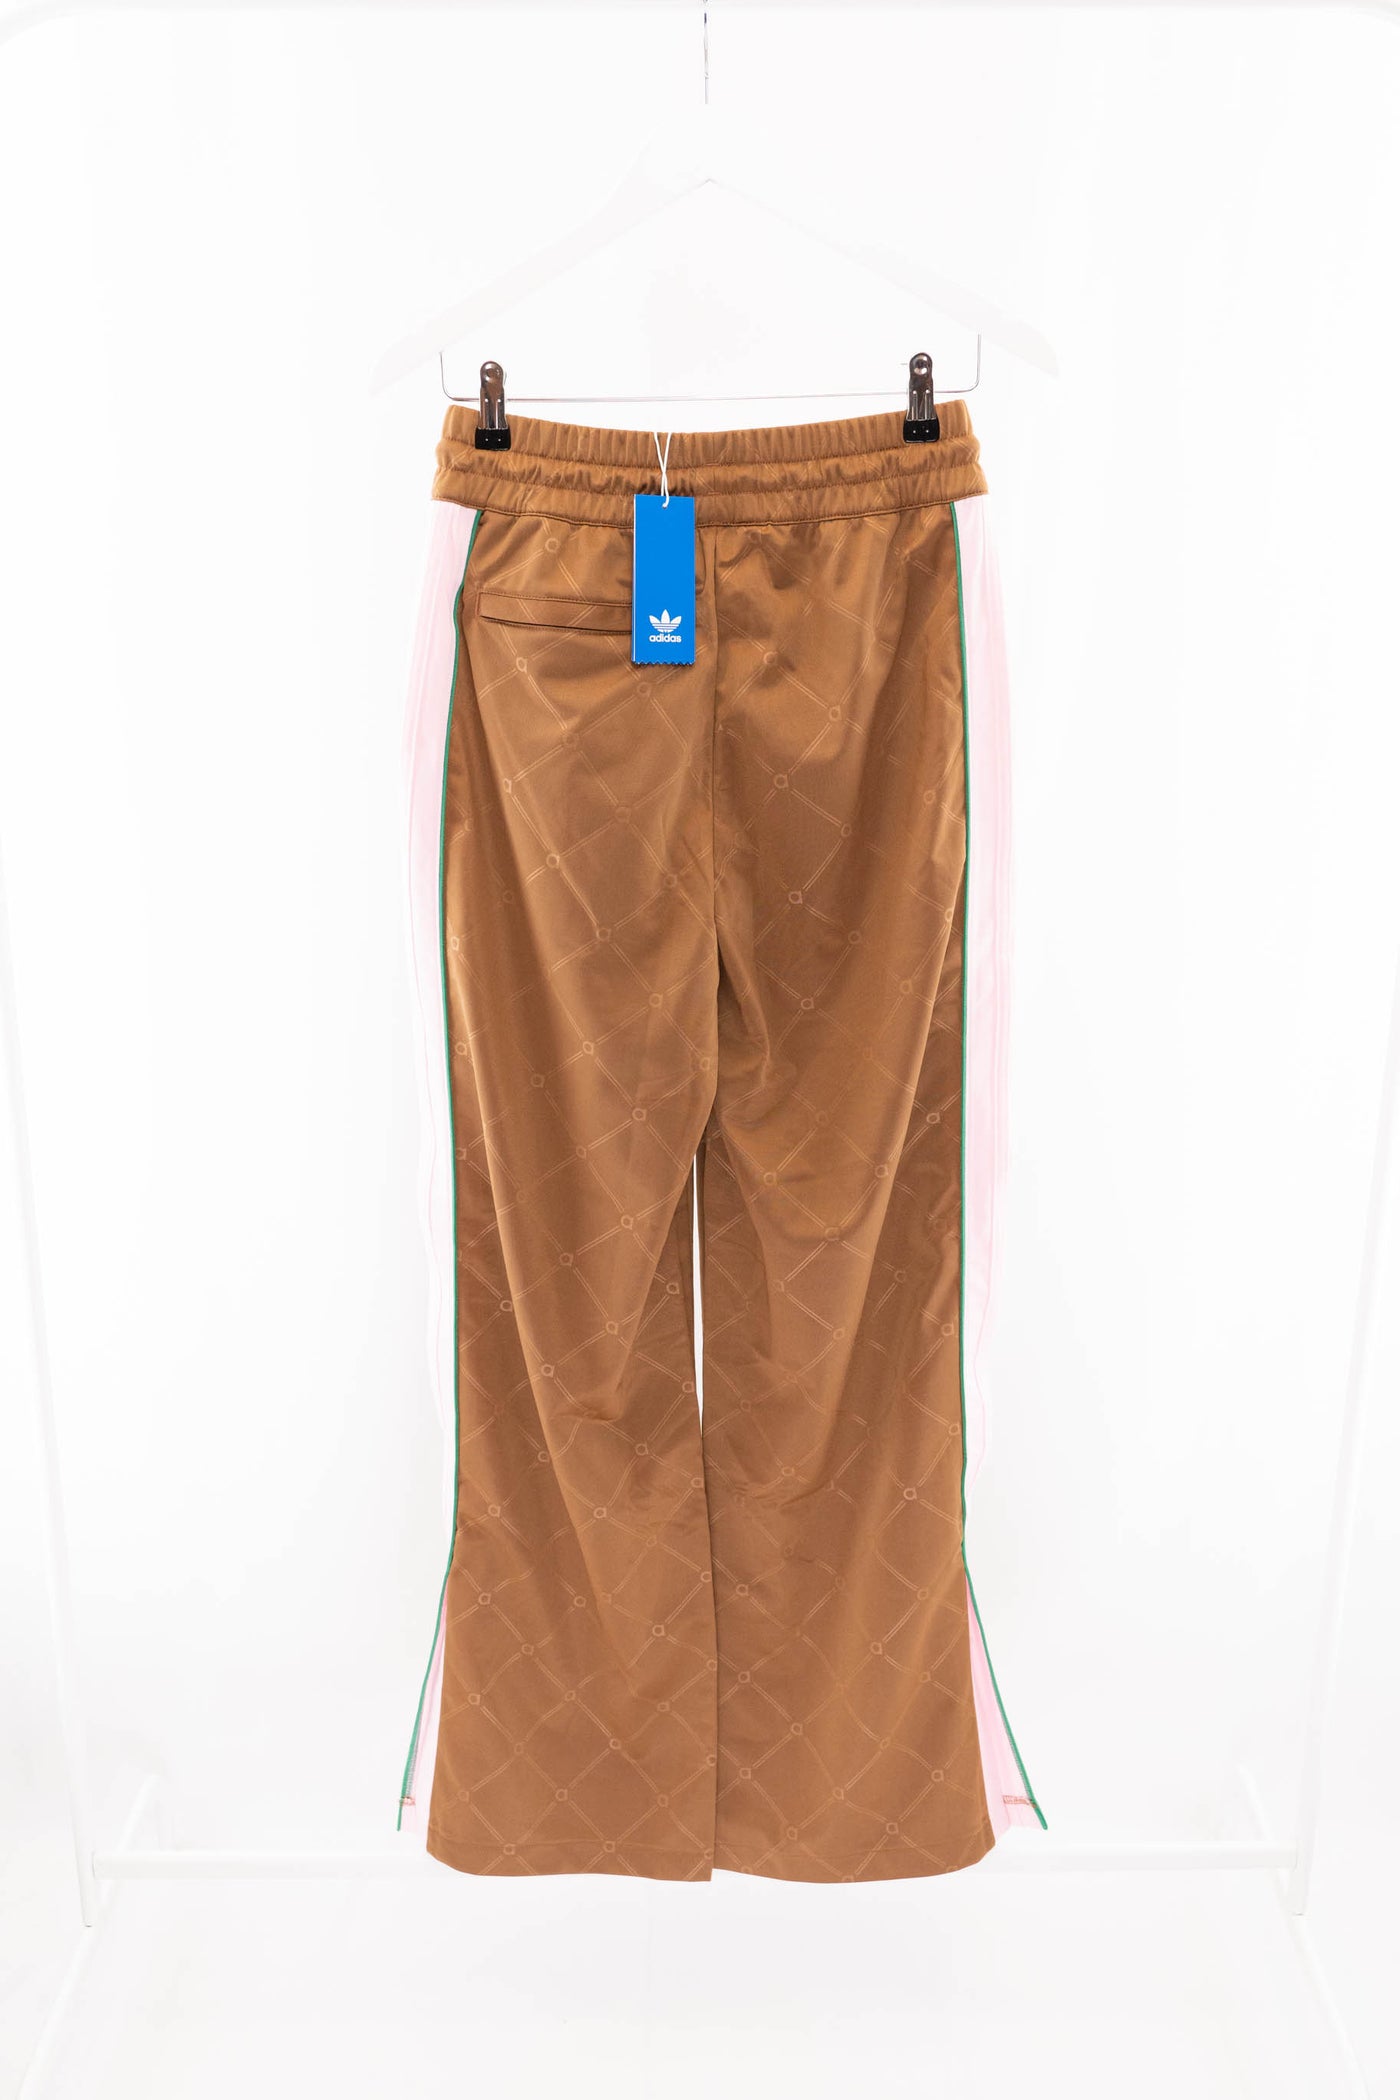 Pantalón deportivo marrón (NUEVO)